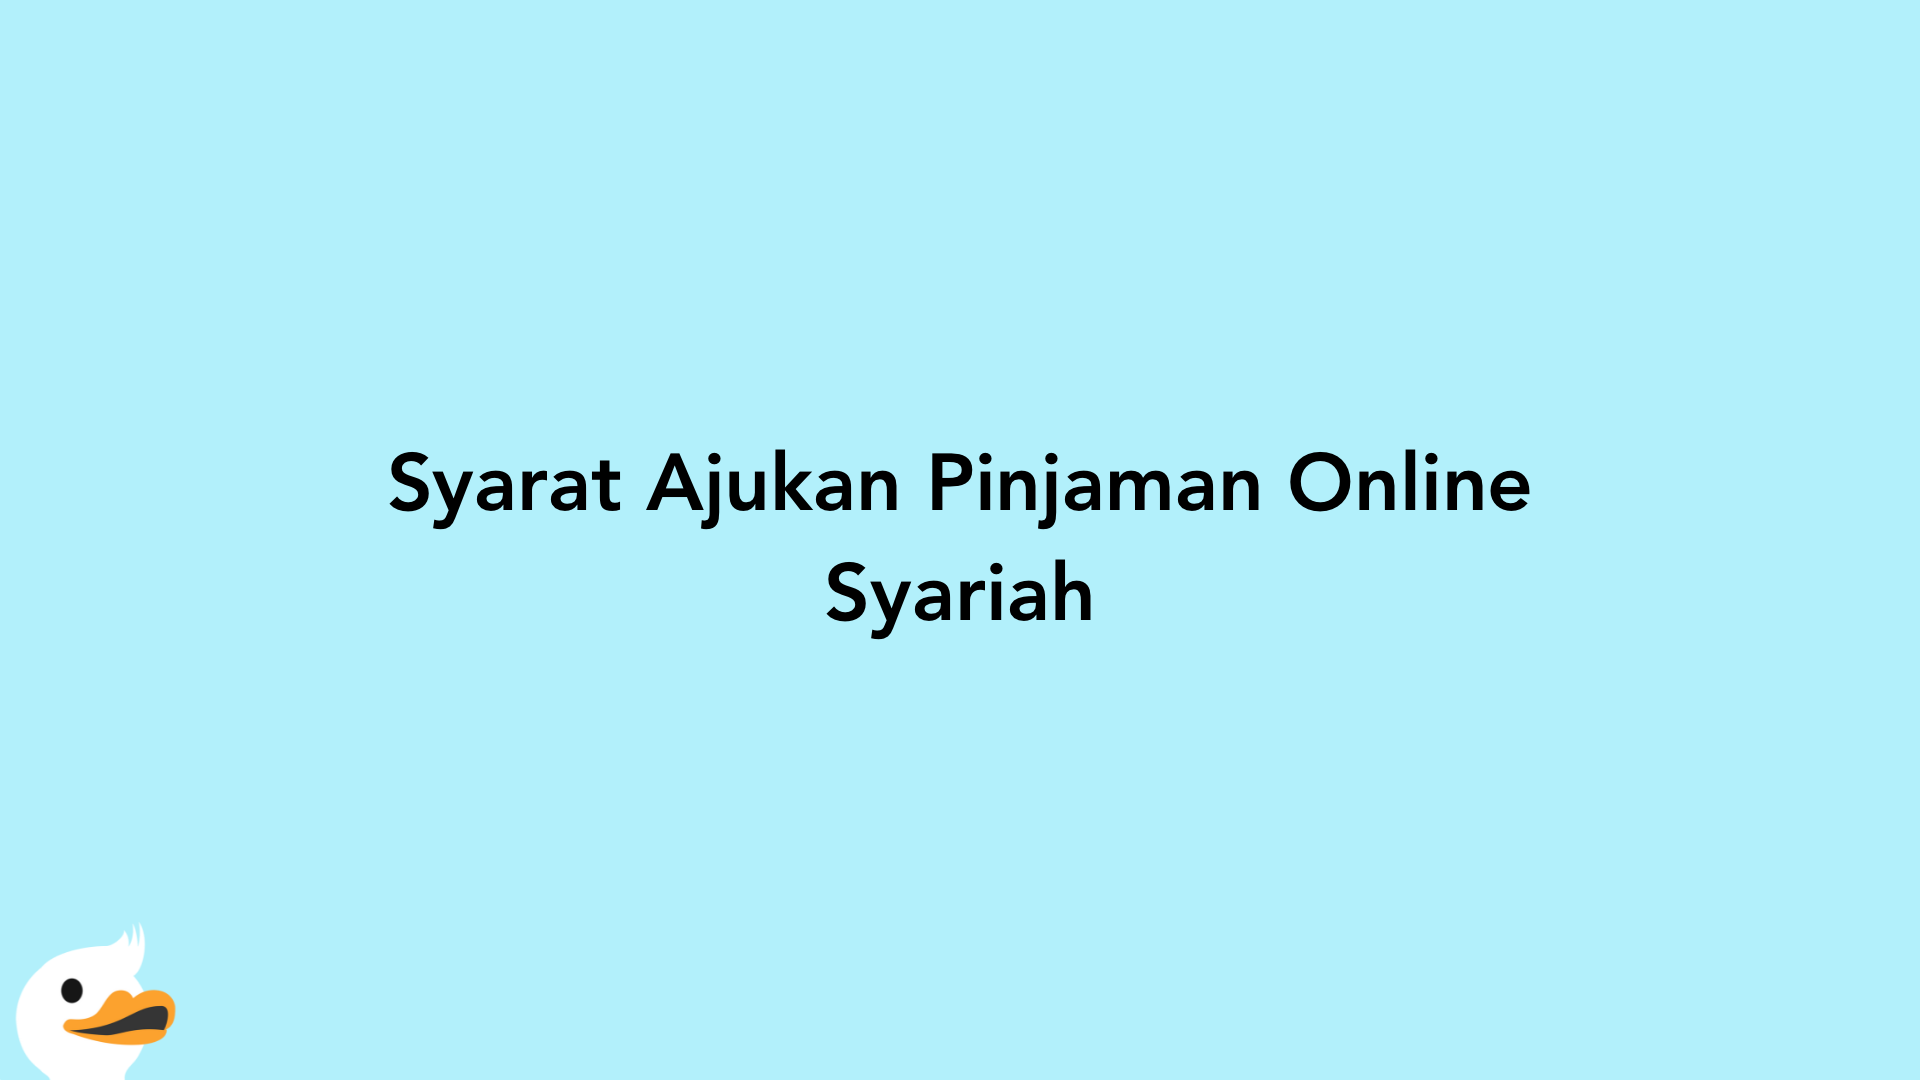 Syarat Ajukan Pinjaman Online Syariah